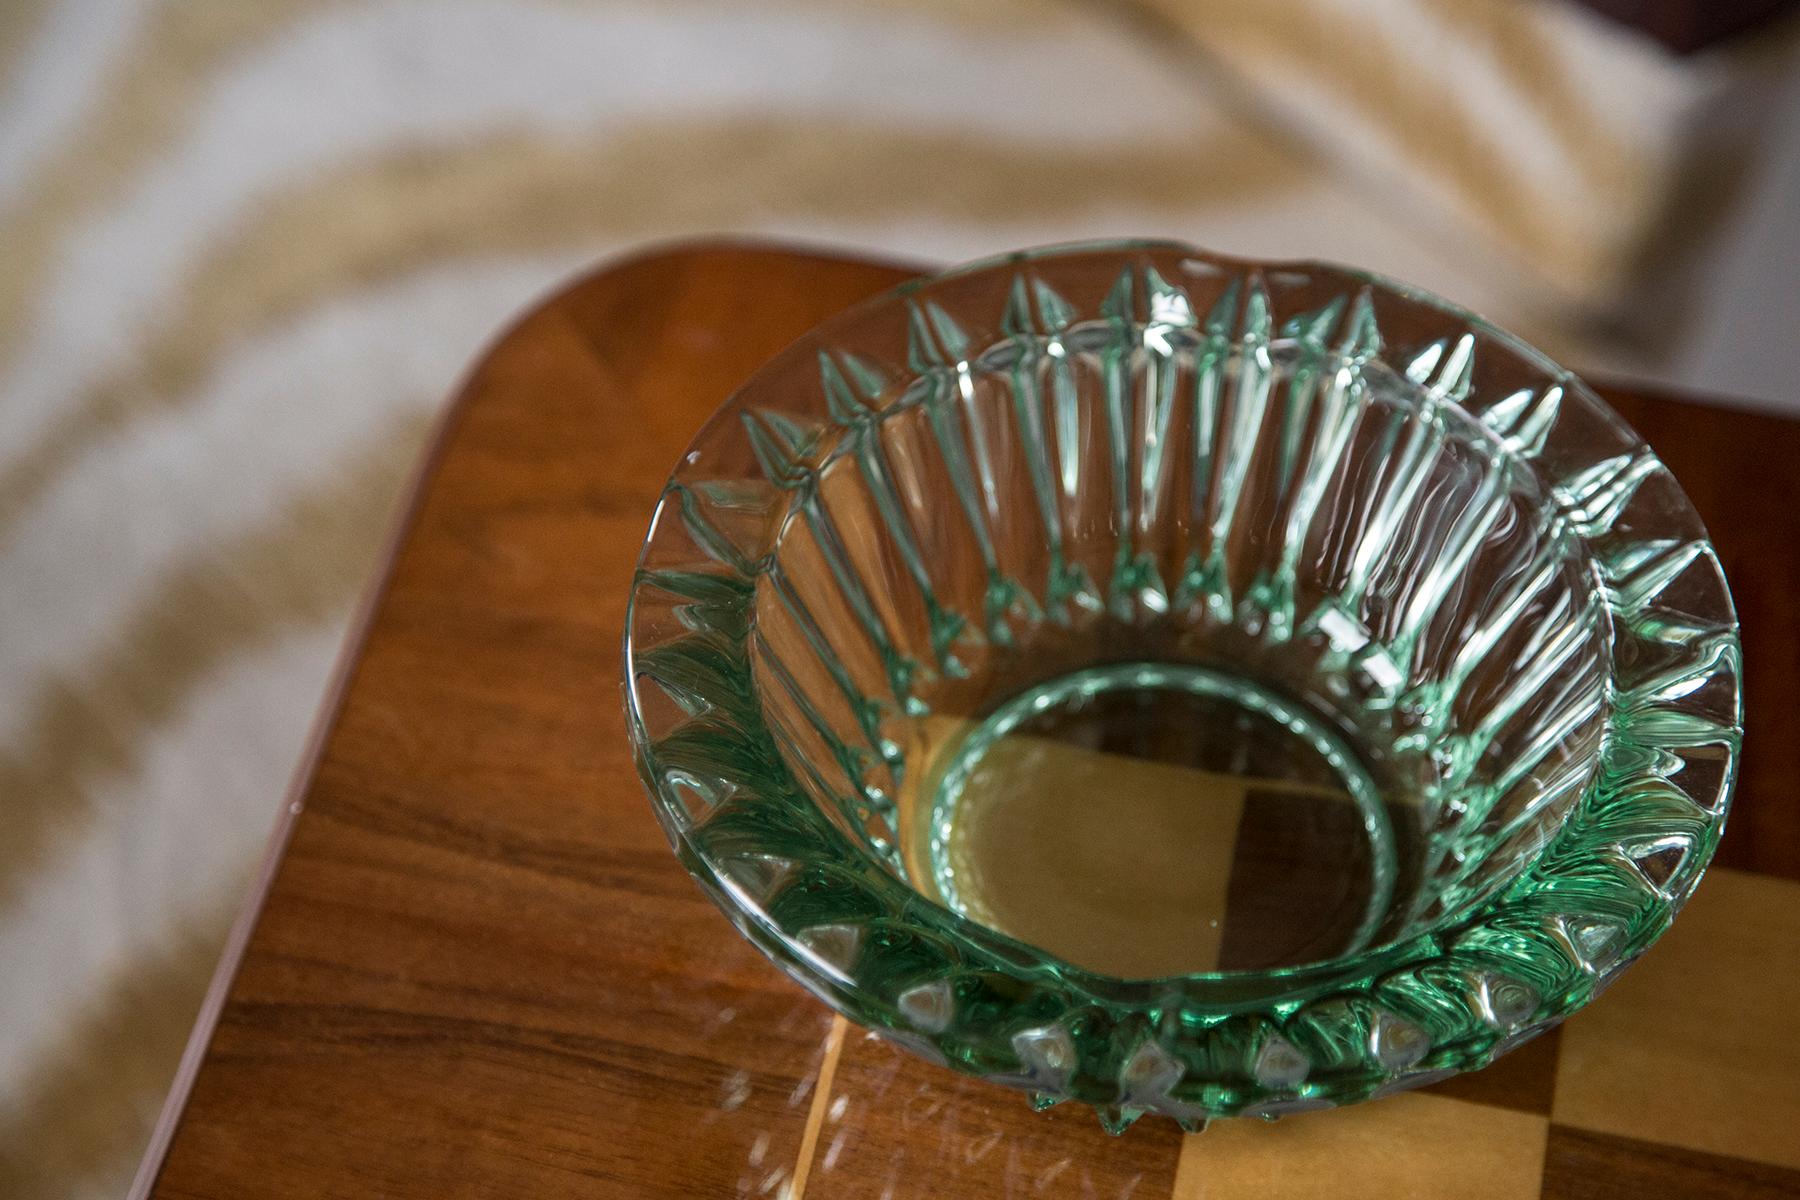 Cet élément original en verre vintage a été conçu et produit dans les années 1970 en Lombardie, en Italie. Elle est fabriquée en technique Sommerso et présente une forme facettée fantastique. La couleur vibrante rend cet article très décoratif. Cet